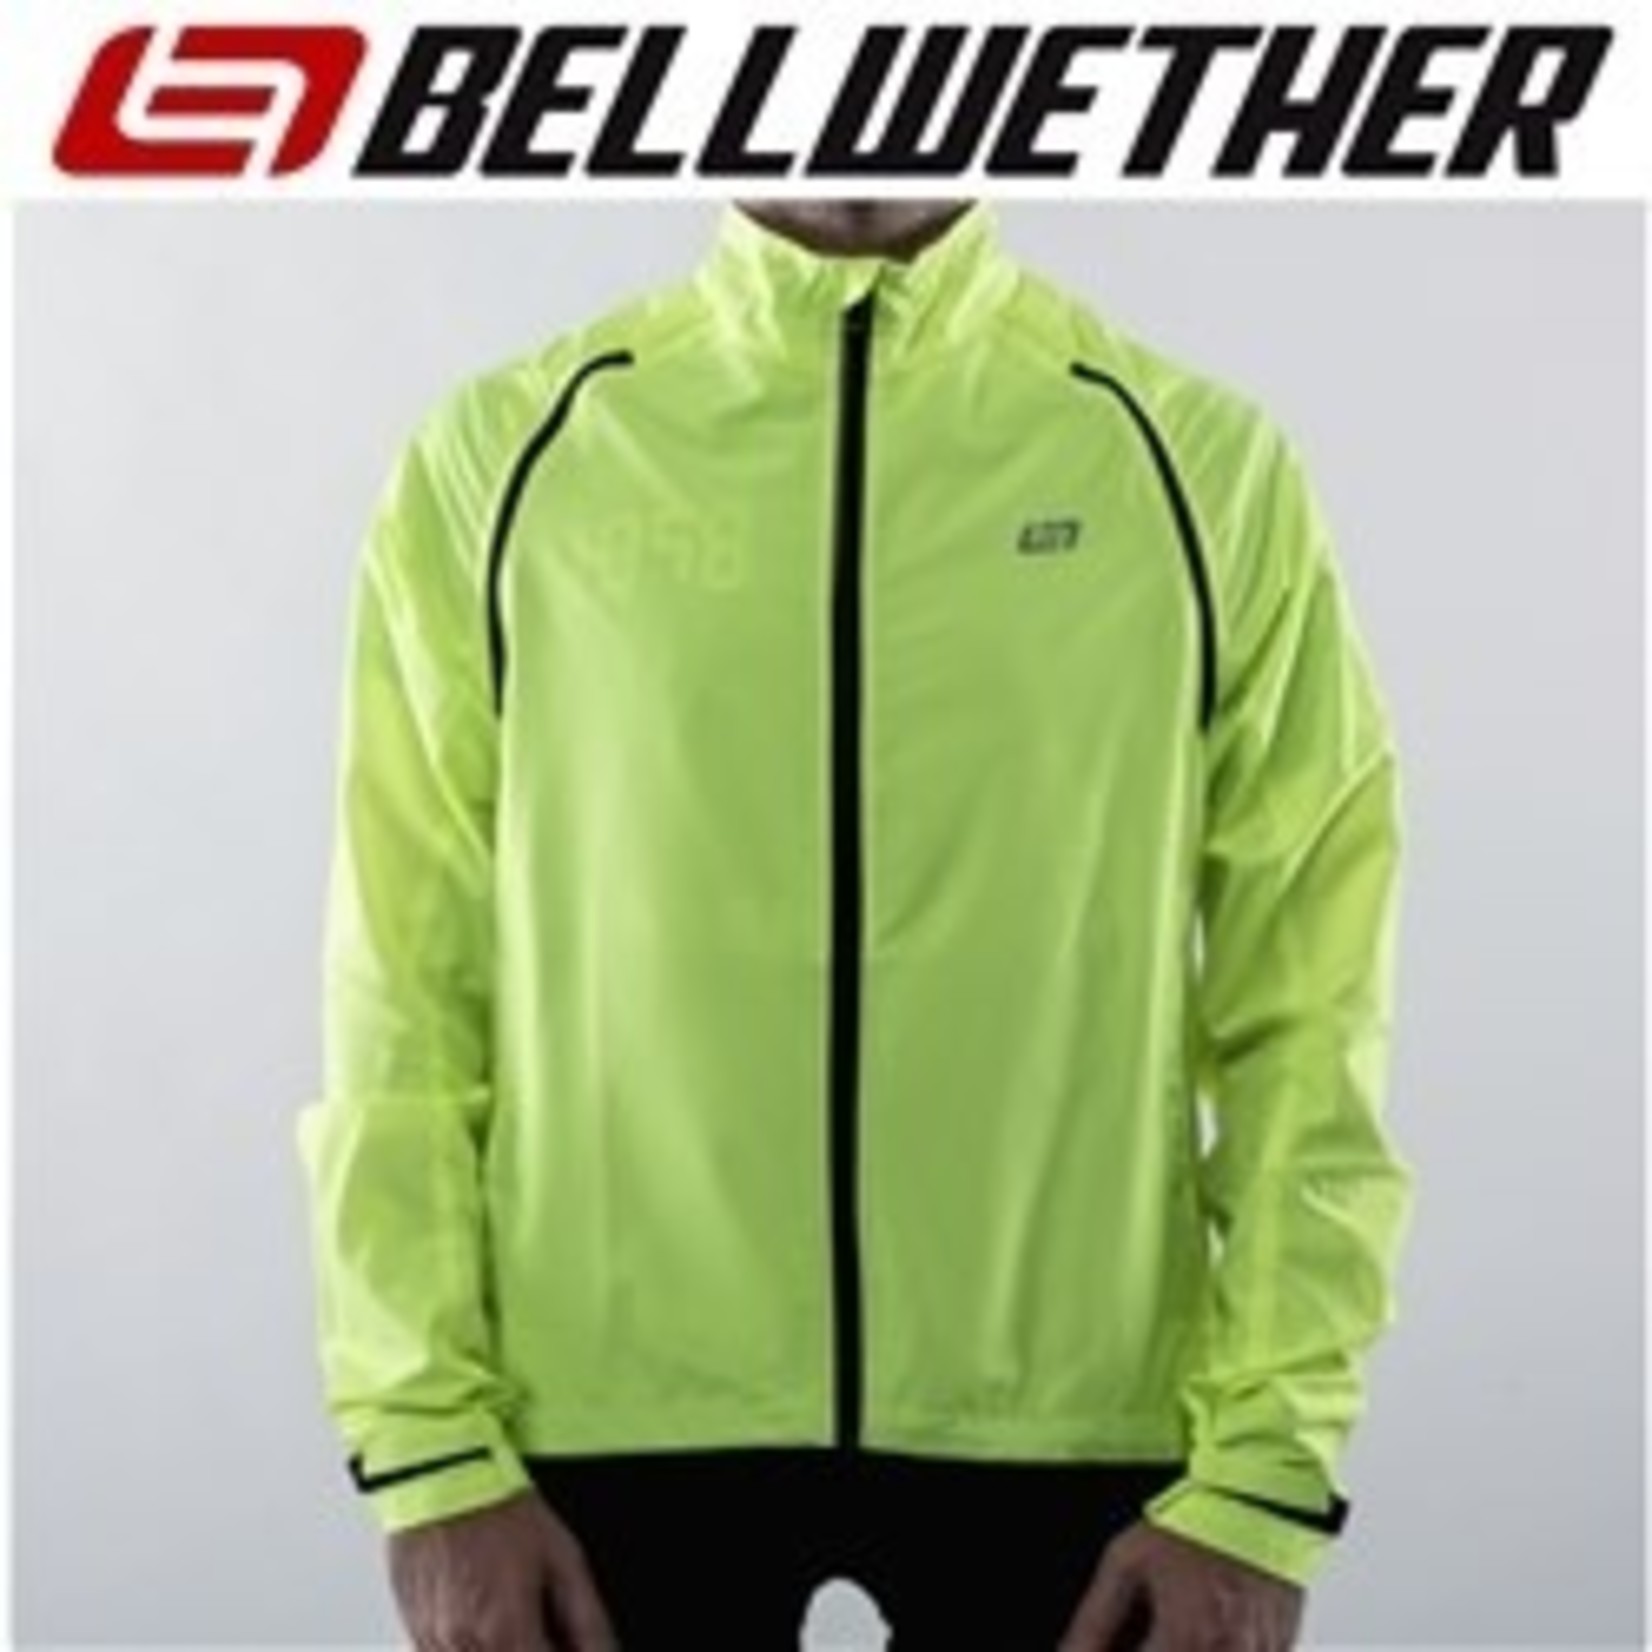 Bellwether Bellwether Men's Cycling Jacket - Velocity Convertible Jacket/Vest - Hi-Vis